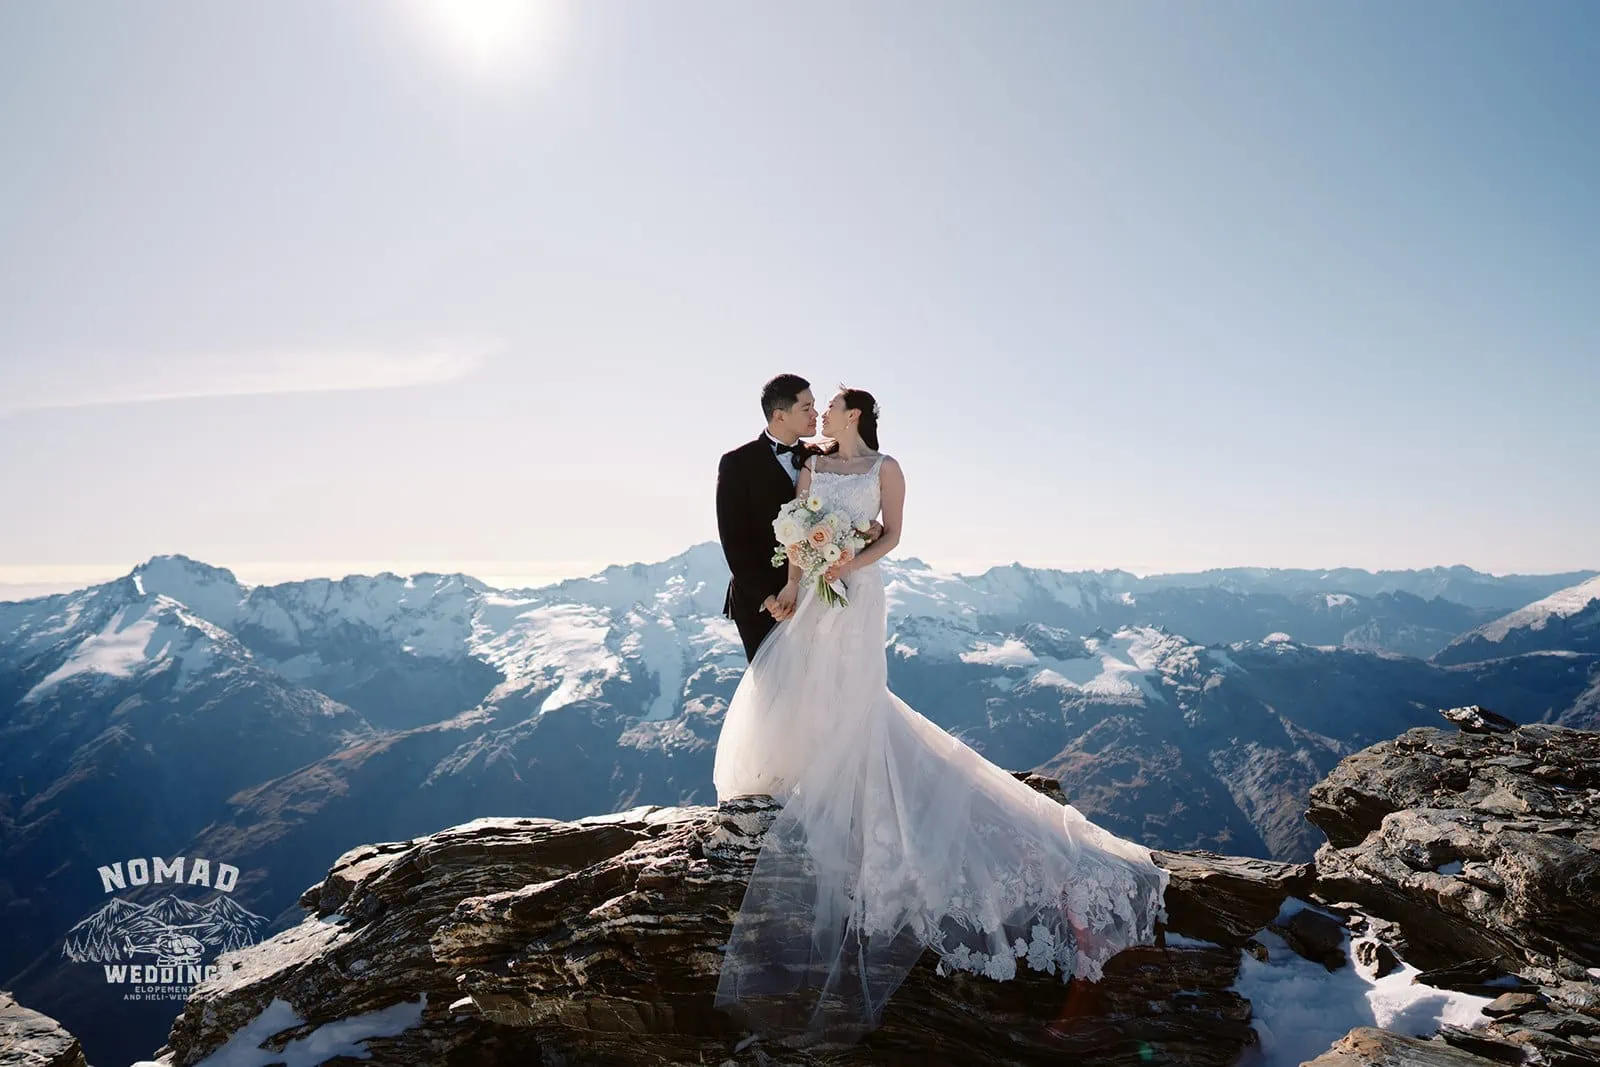 Lora & Jason's Queenstown New Zealand Elopement Wedding Photographer Glacier Heli